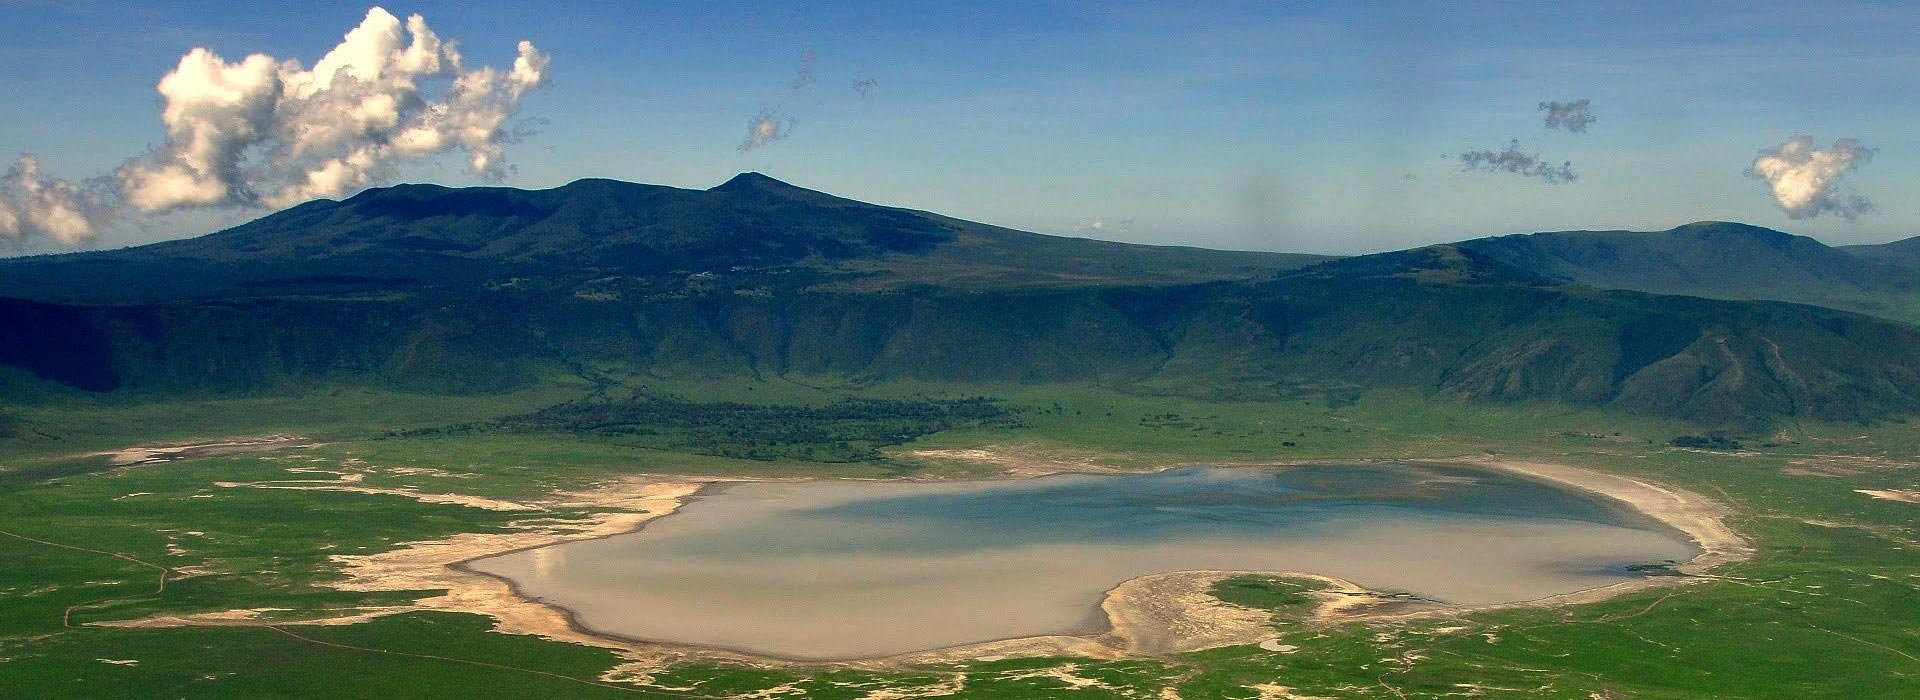 Ngorongoro Conservation Area-Ngorongoro Crater - Pamoja Tours and Travel